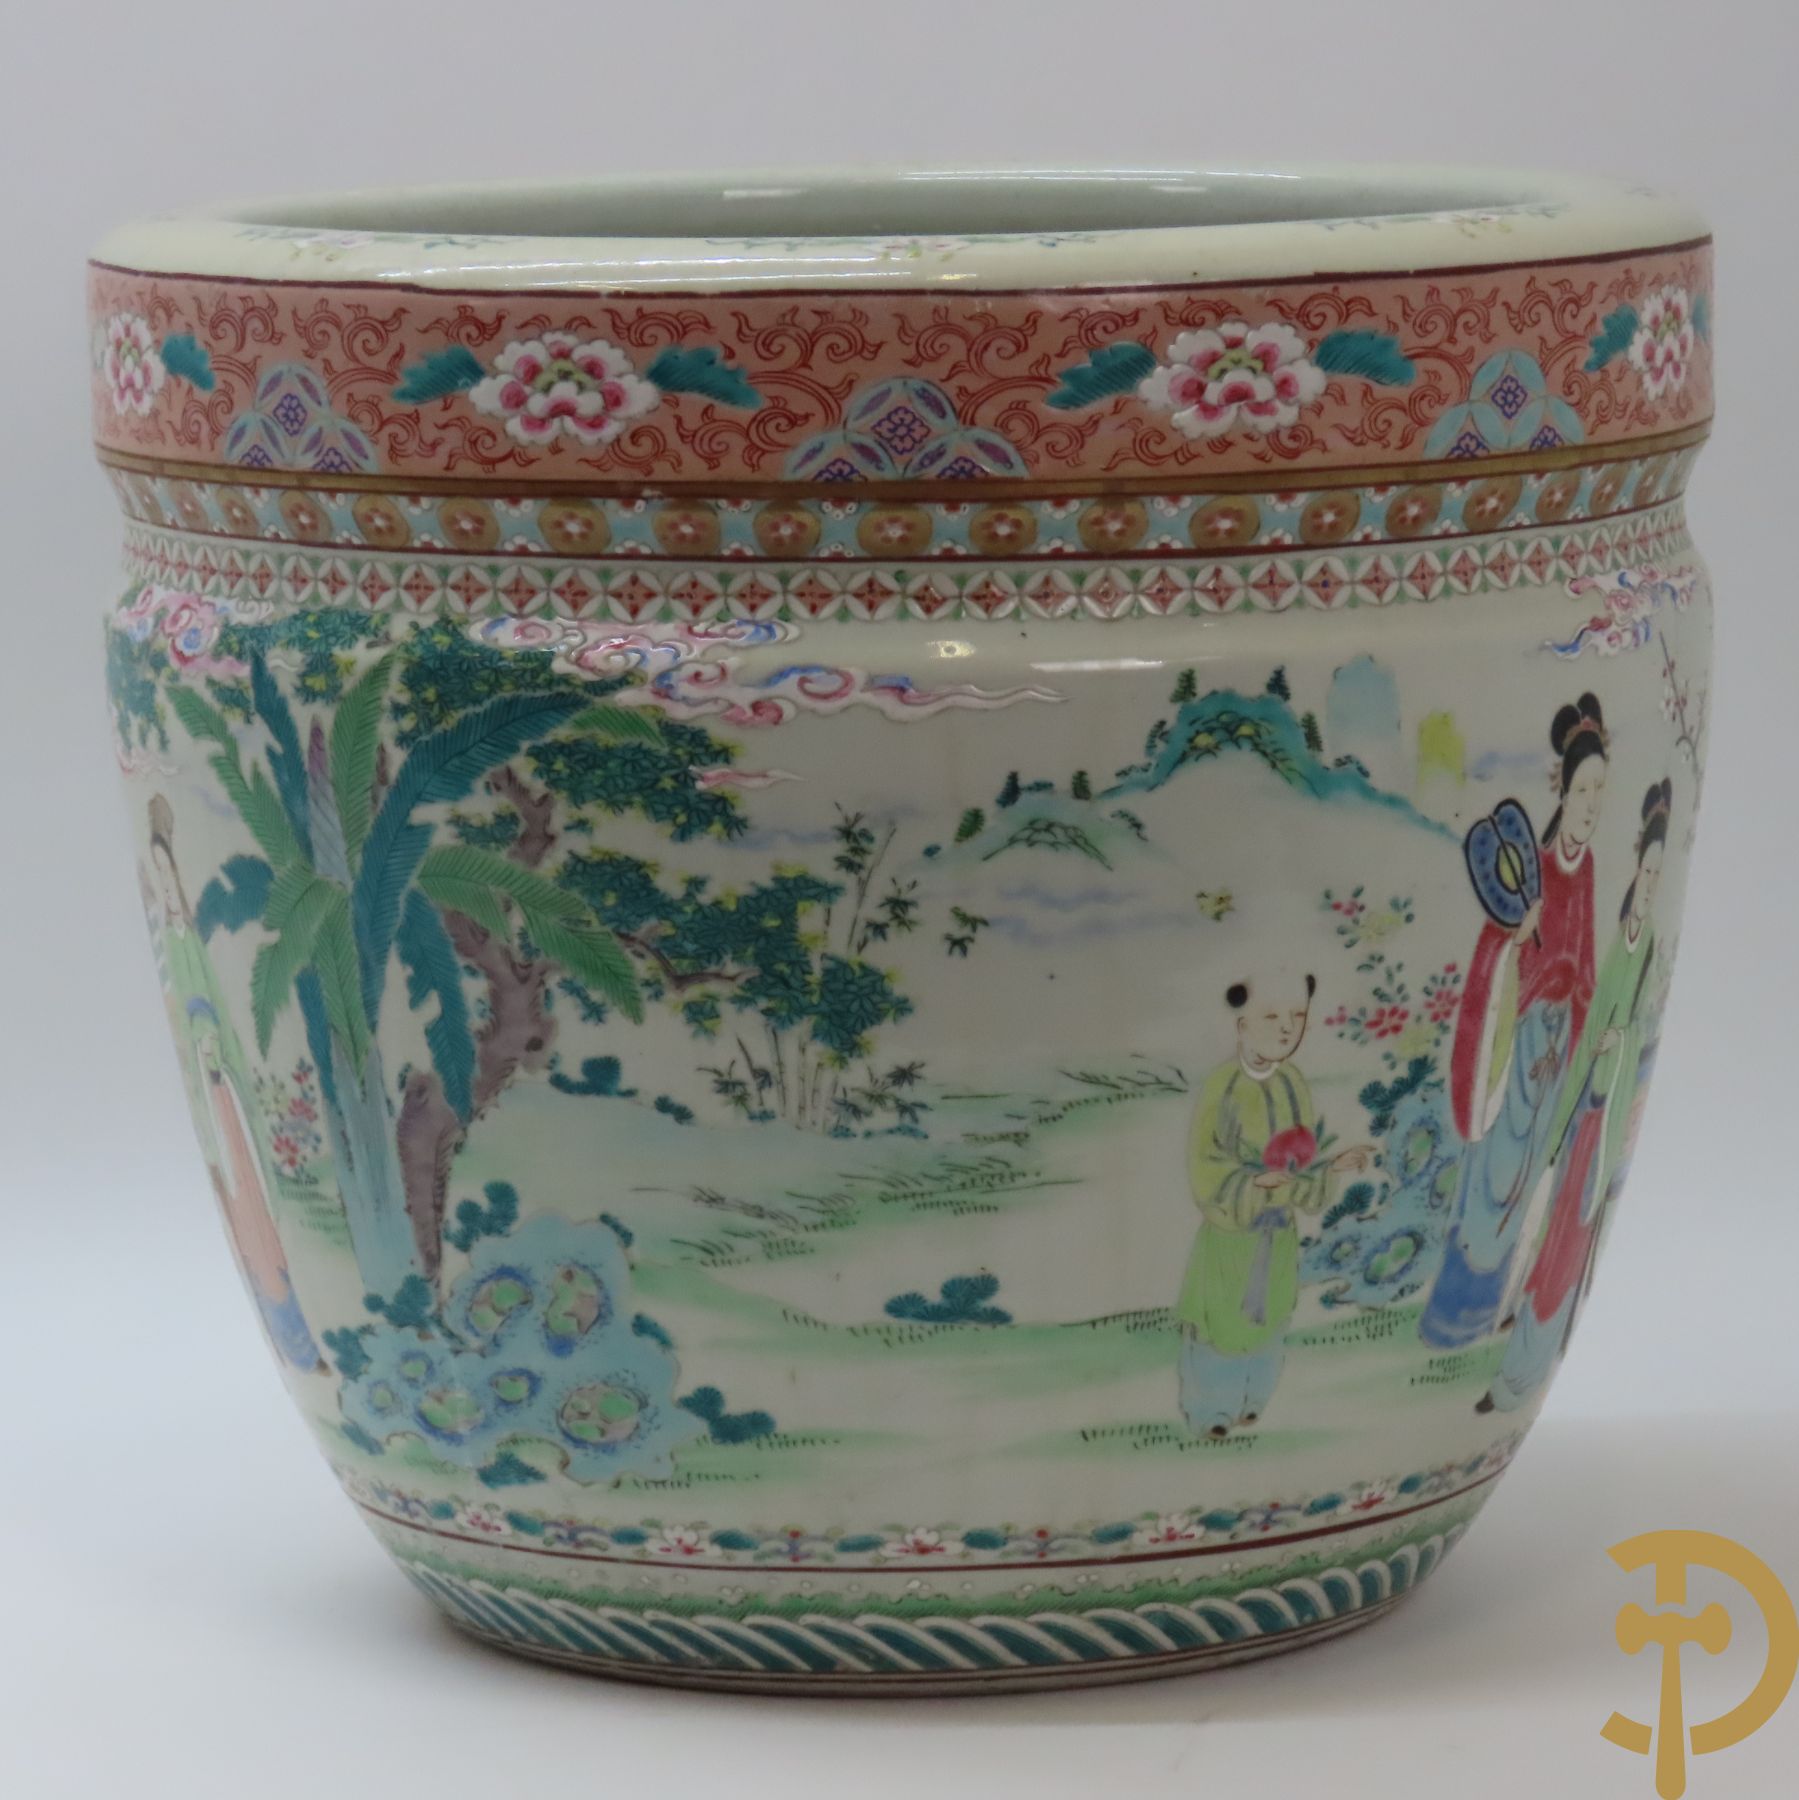 Chinese porseleinen cachepot met decor van tafel met wijsgeer en dames, onderaan gemerkt